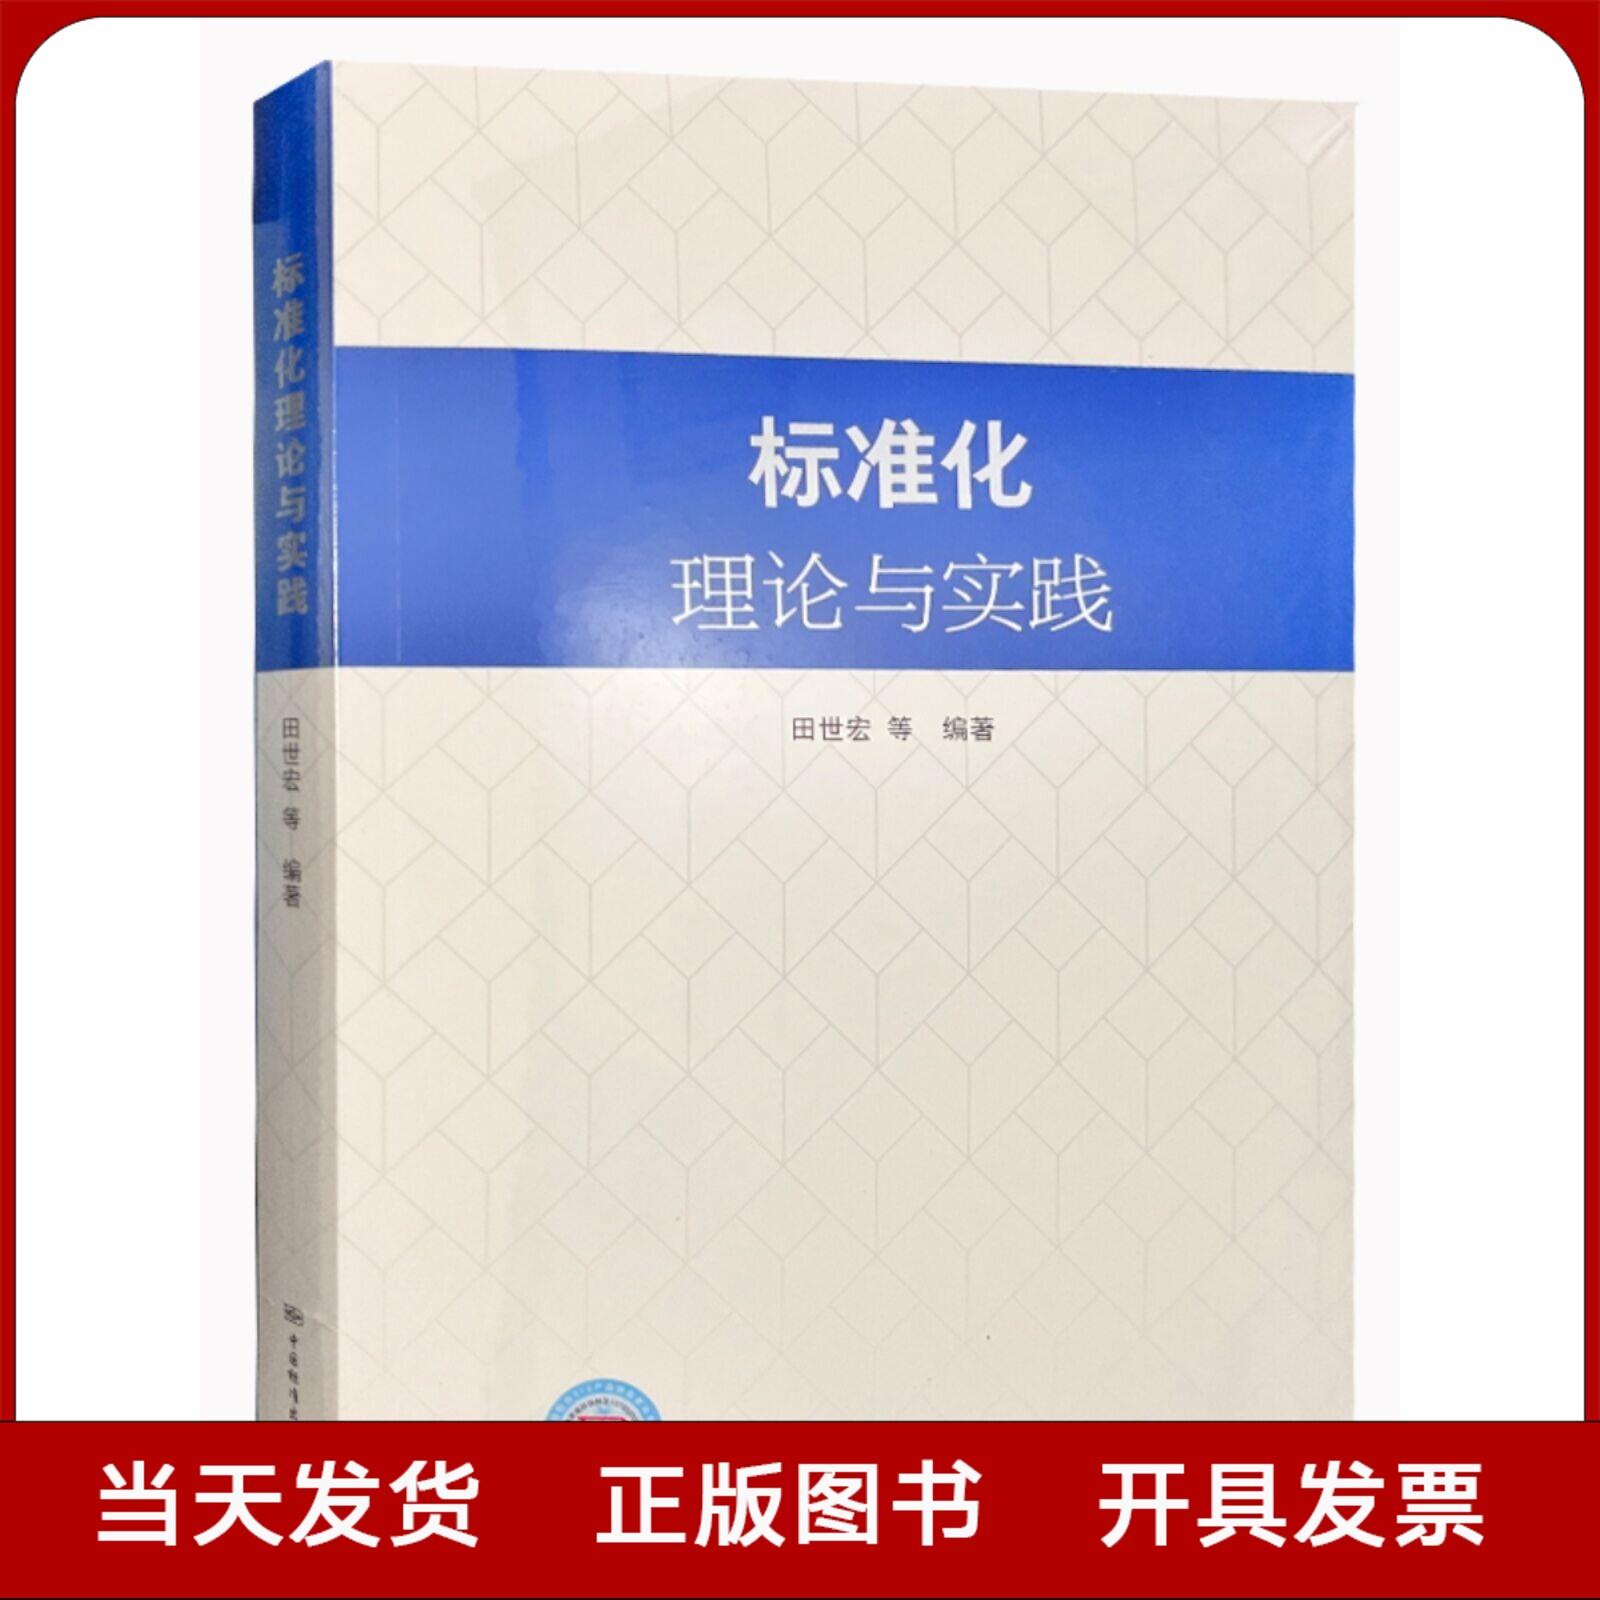 全新官方正版 标准化理论与实践 田世宏等著 中国标准出版社